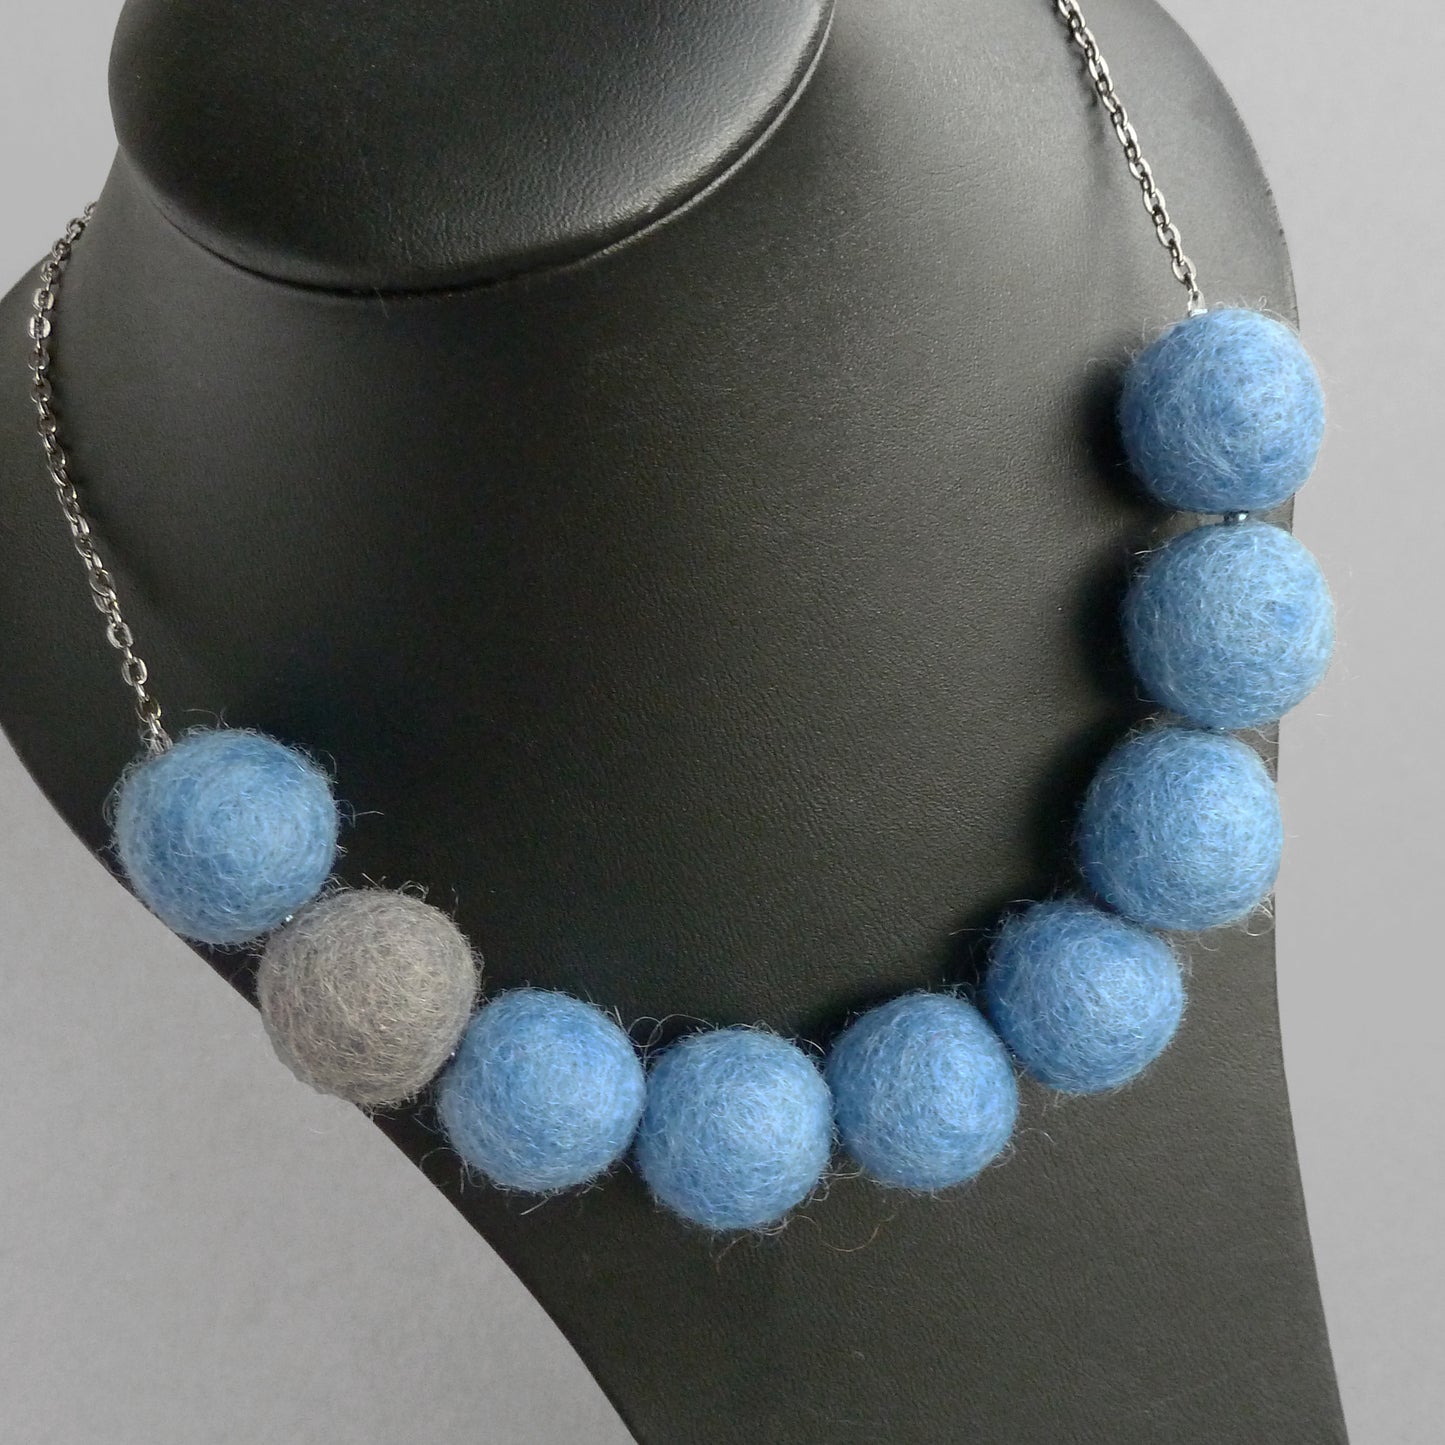 Chunky blue felt necklace